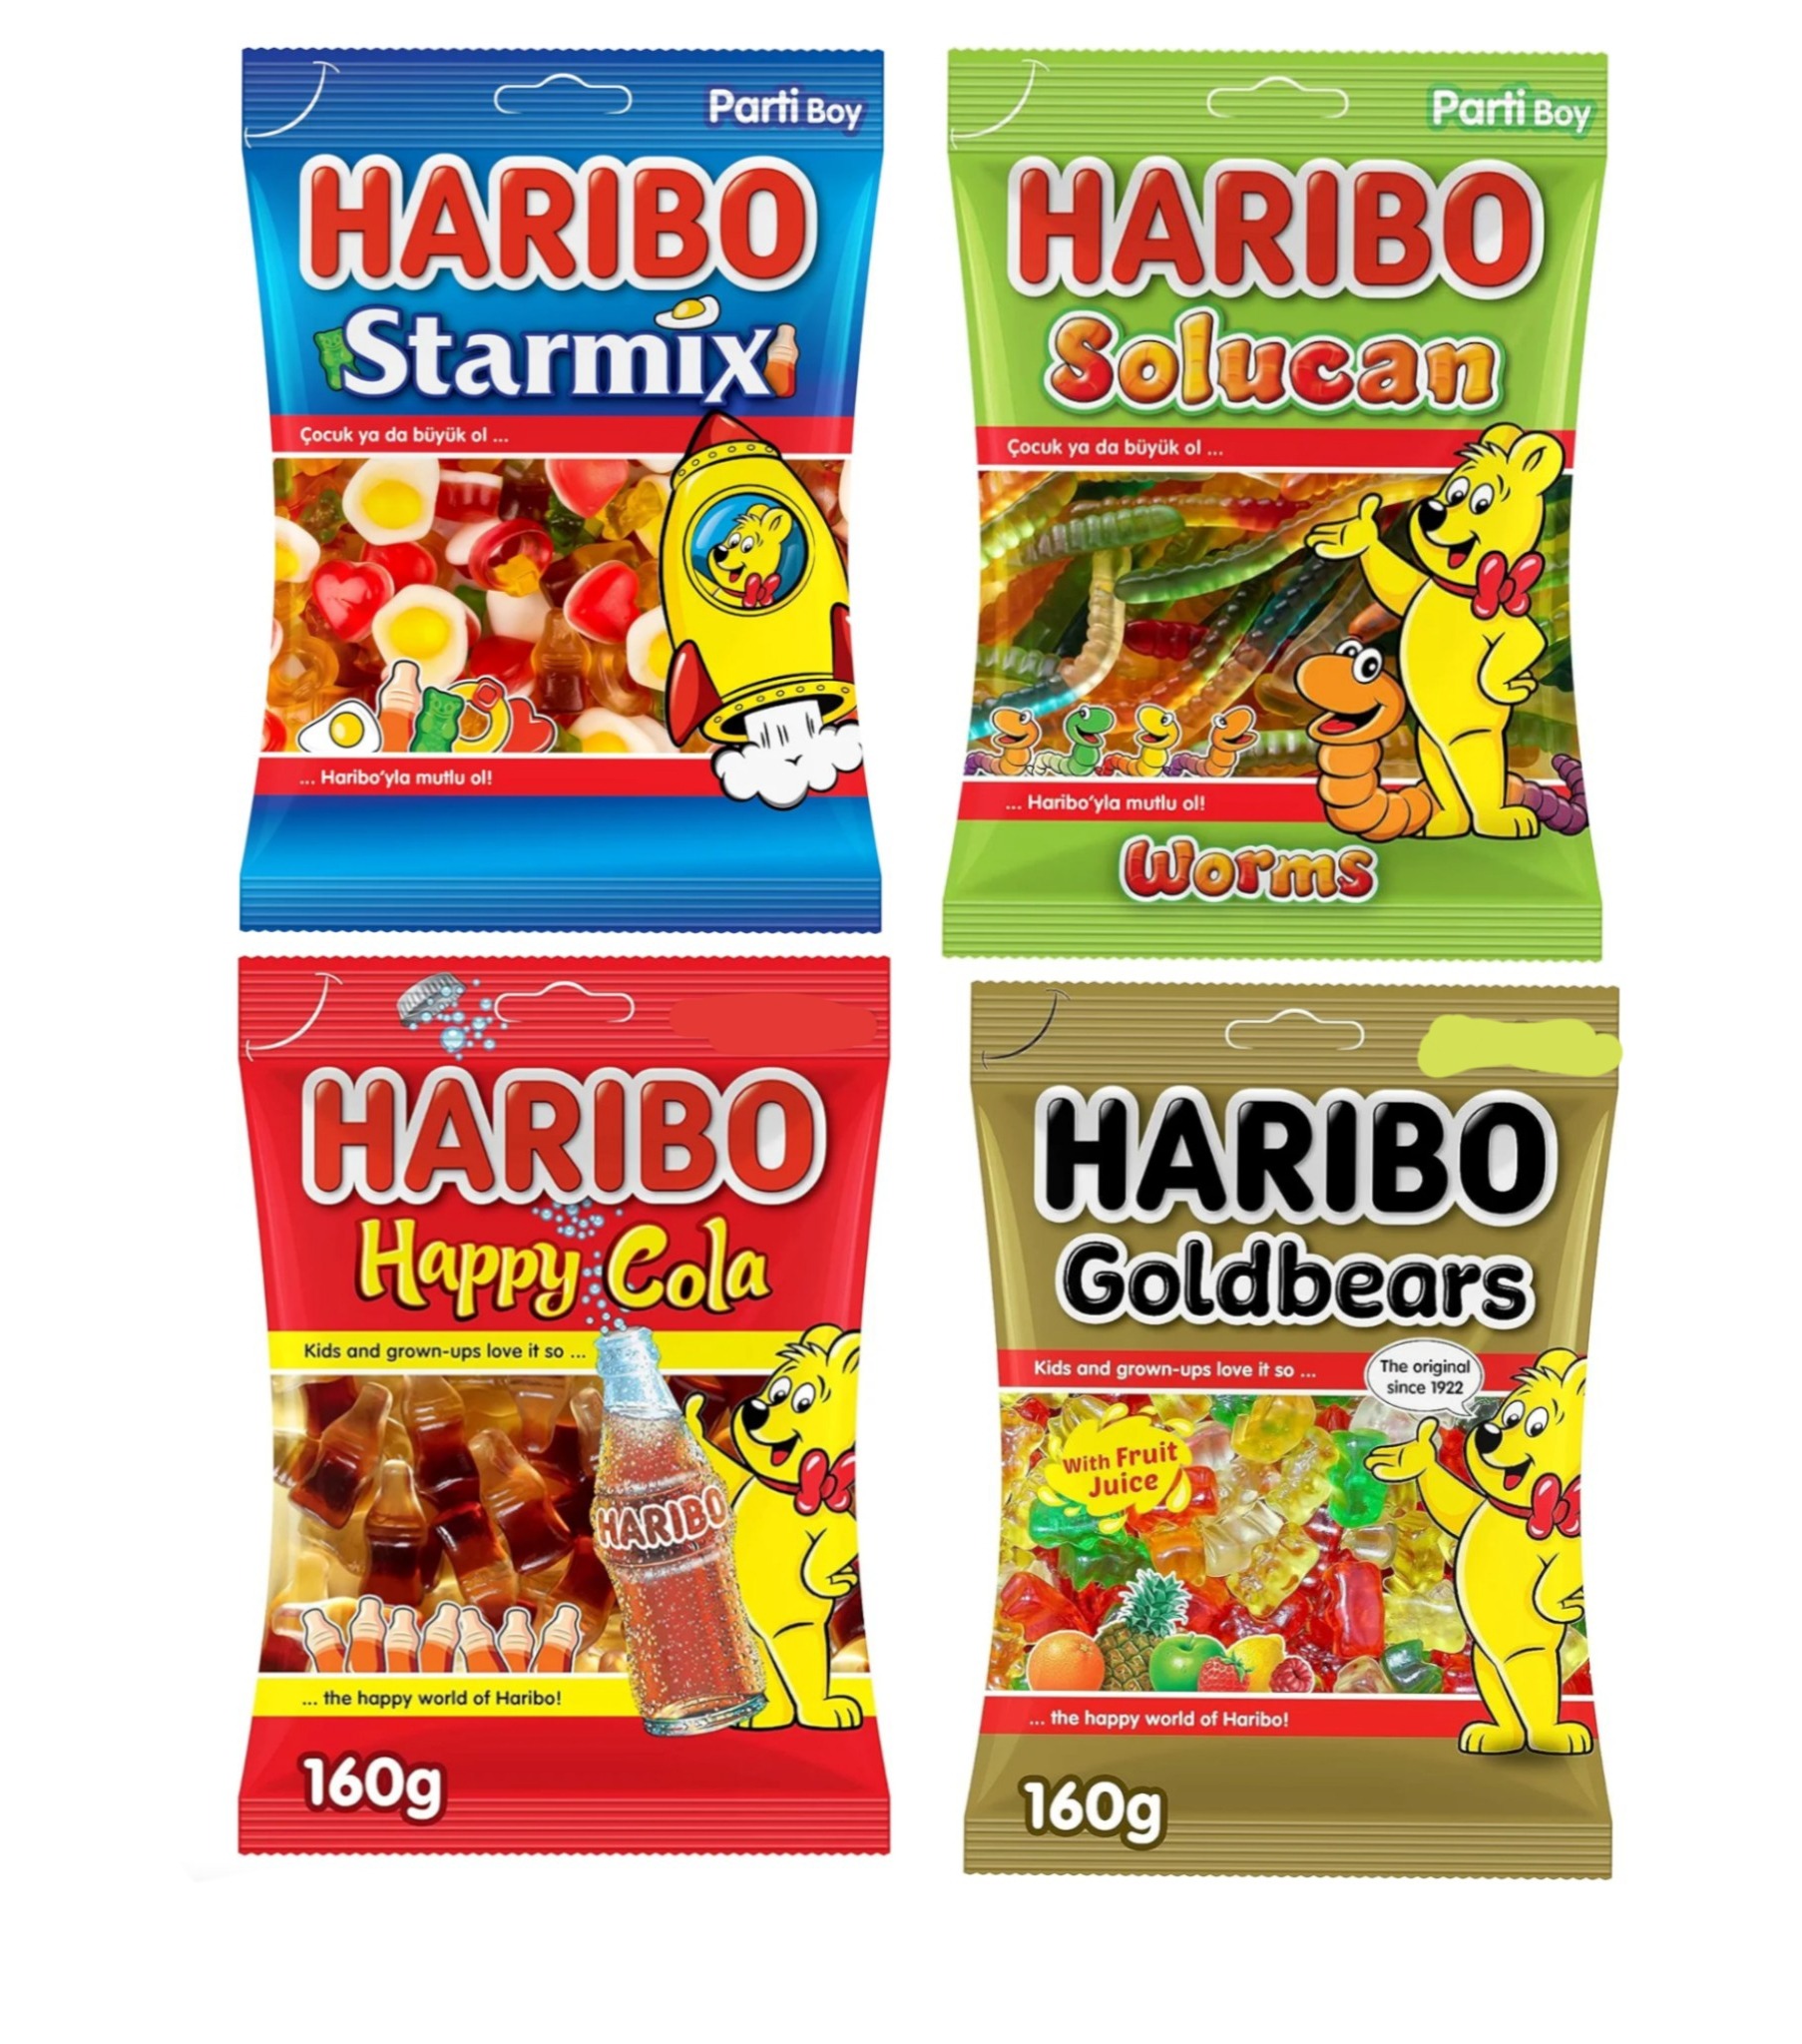 (Food) 4Pcs Haribo Star Mix Jelly Cocuk ya da buyuk ol (4X160G)